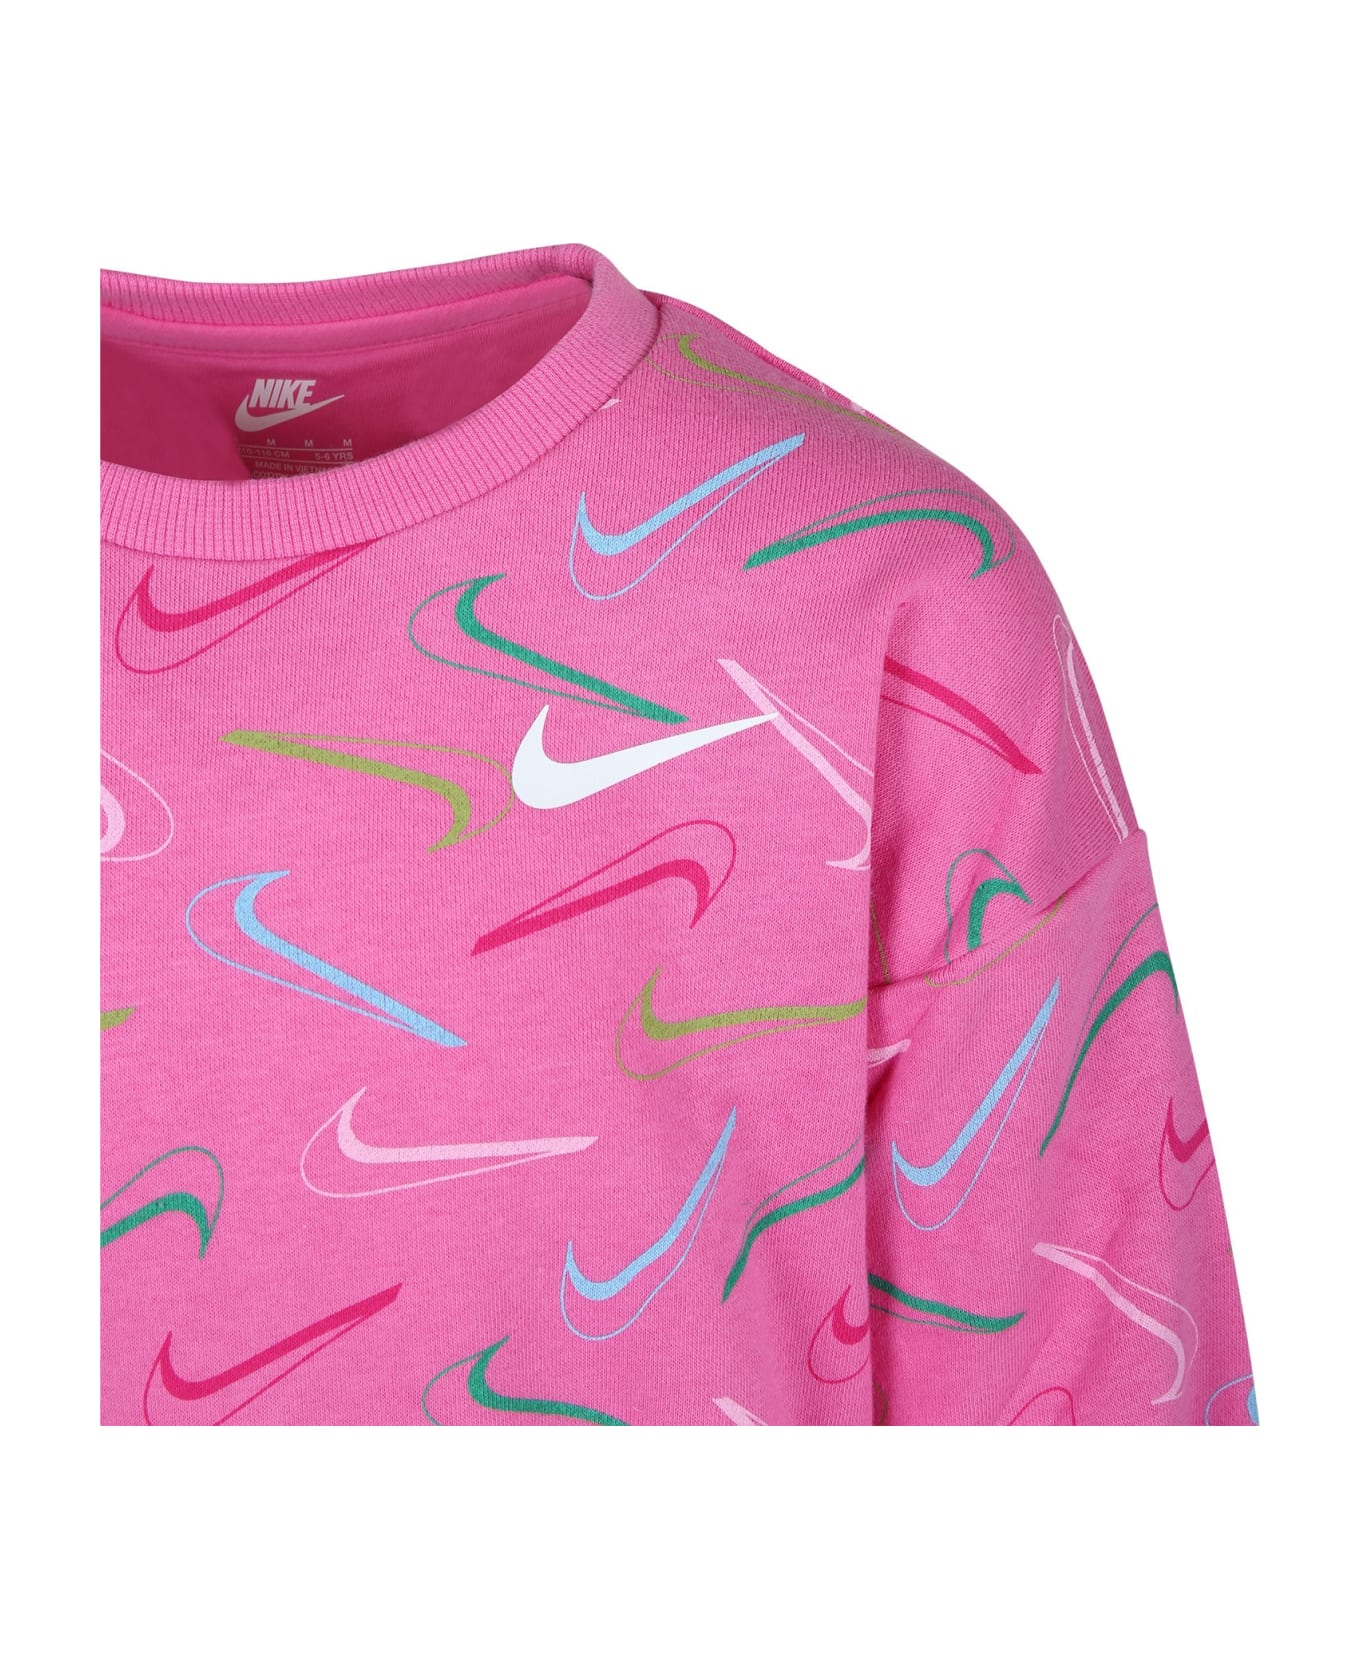 Nike Fuchsia Sweatshirt For Girl With Iconic Swoosh - Fuchsia